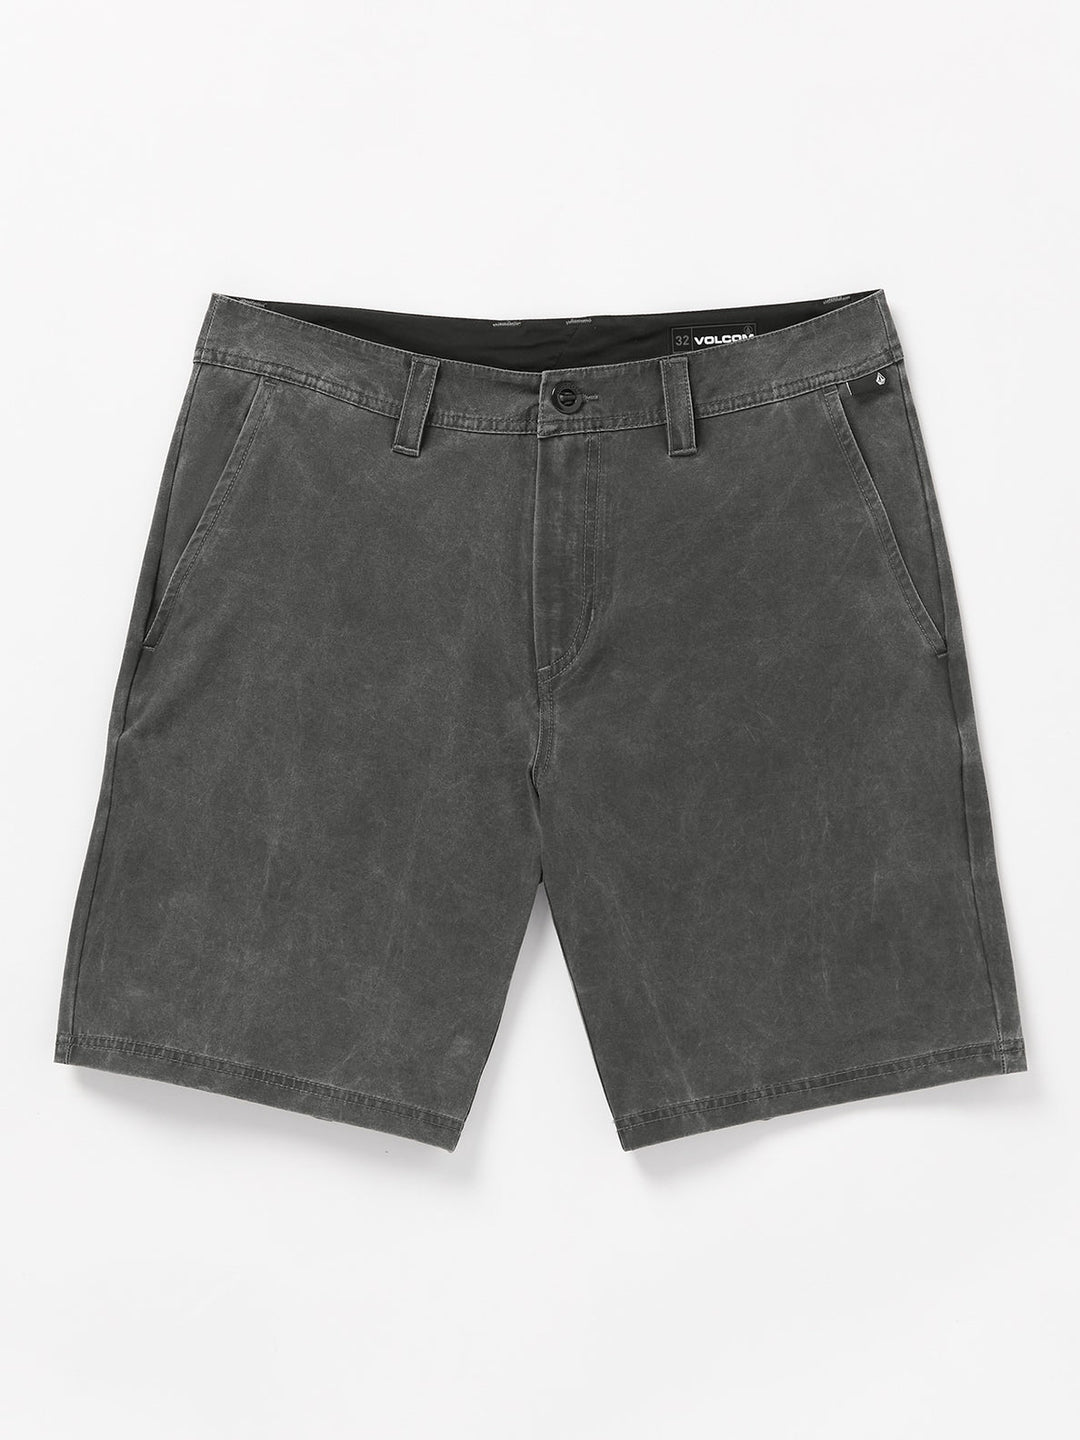 Volcom Stone Faded Hybrid Shorts - Stealth - Sun Diego Boardshop